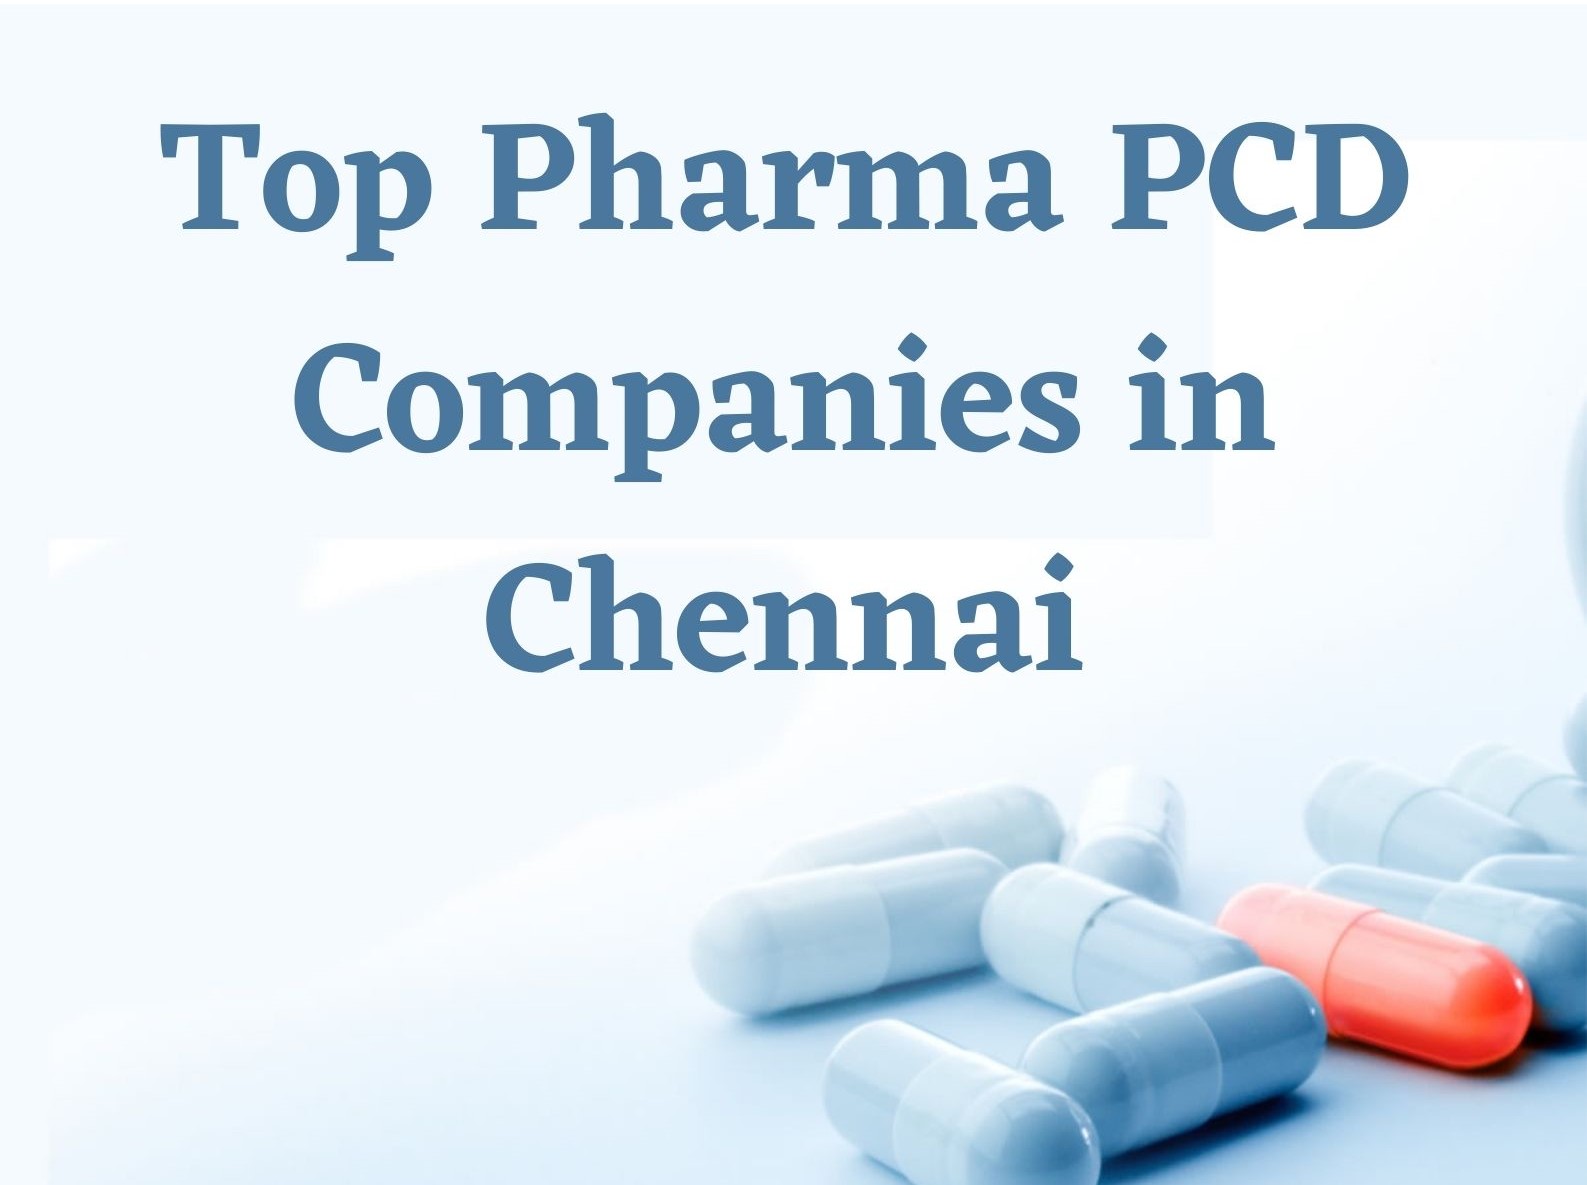 Top Pharma PCD Companies in Chennai